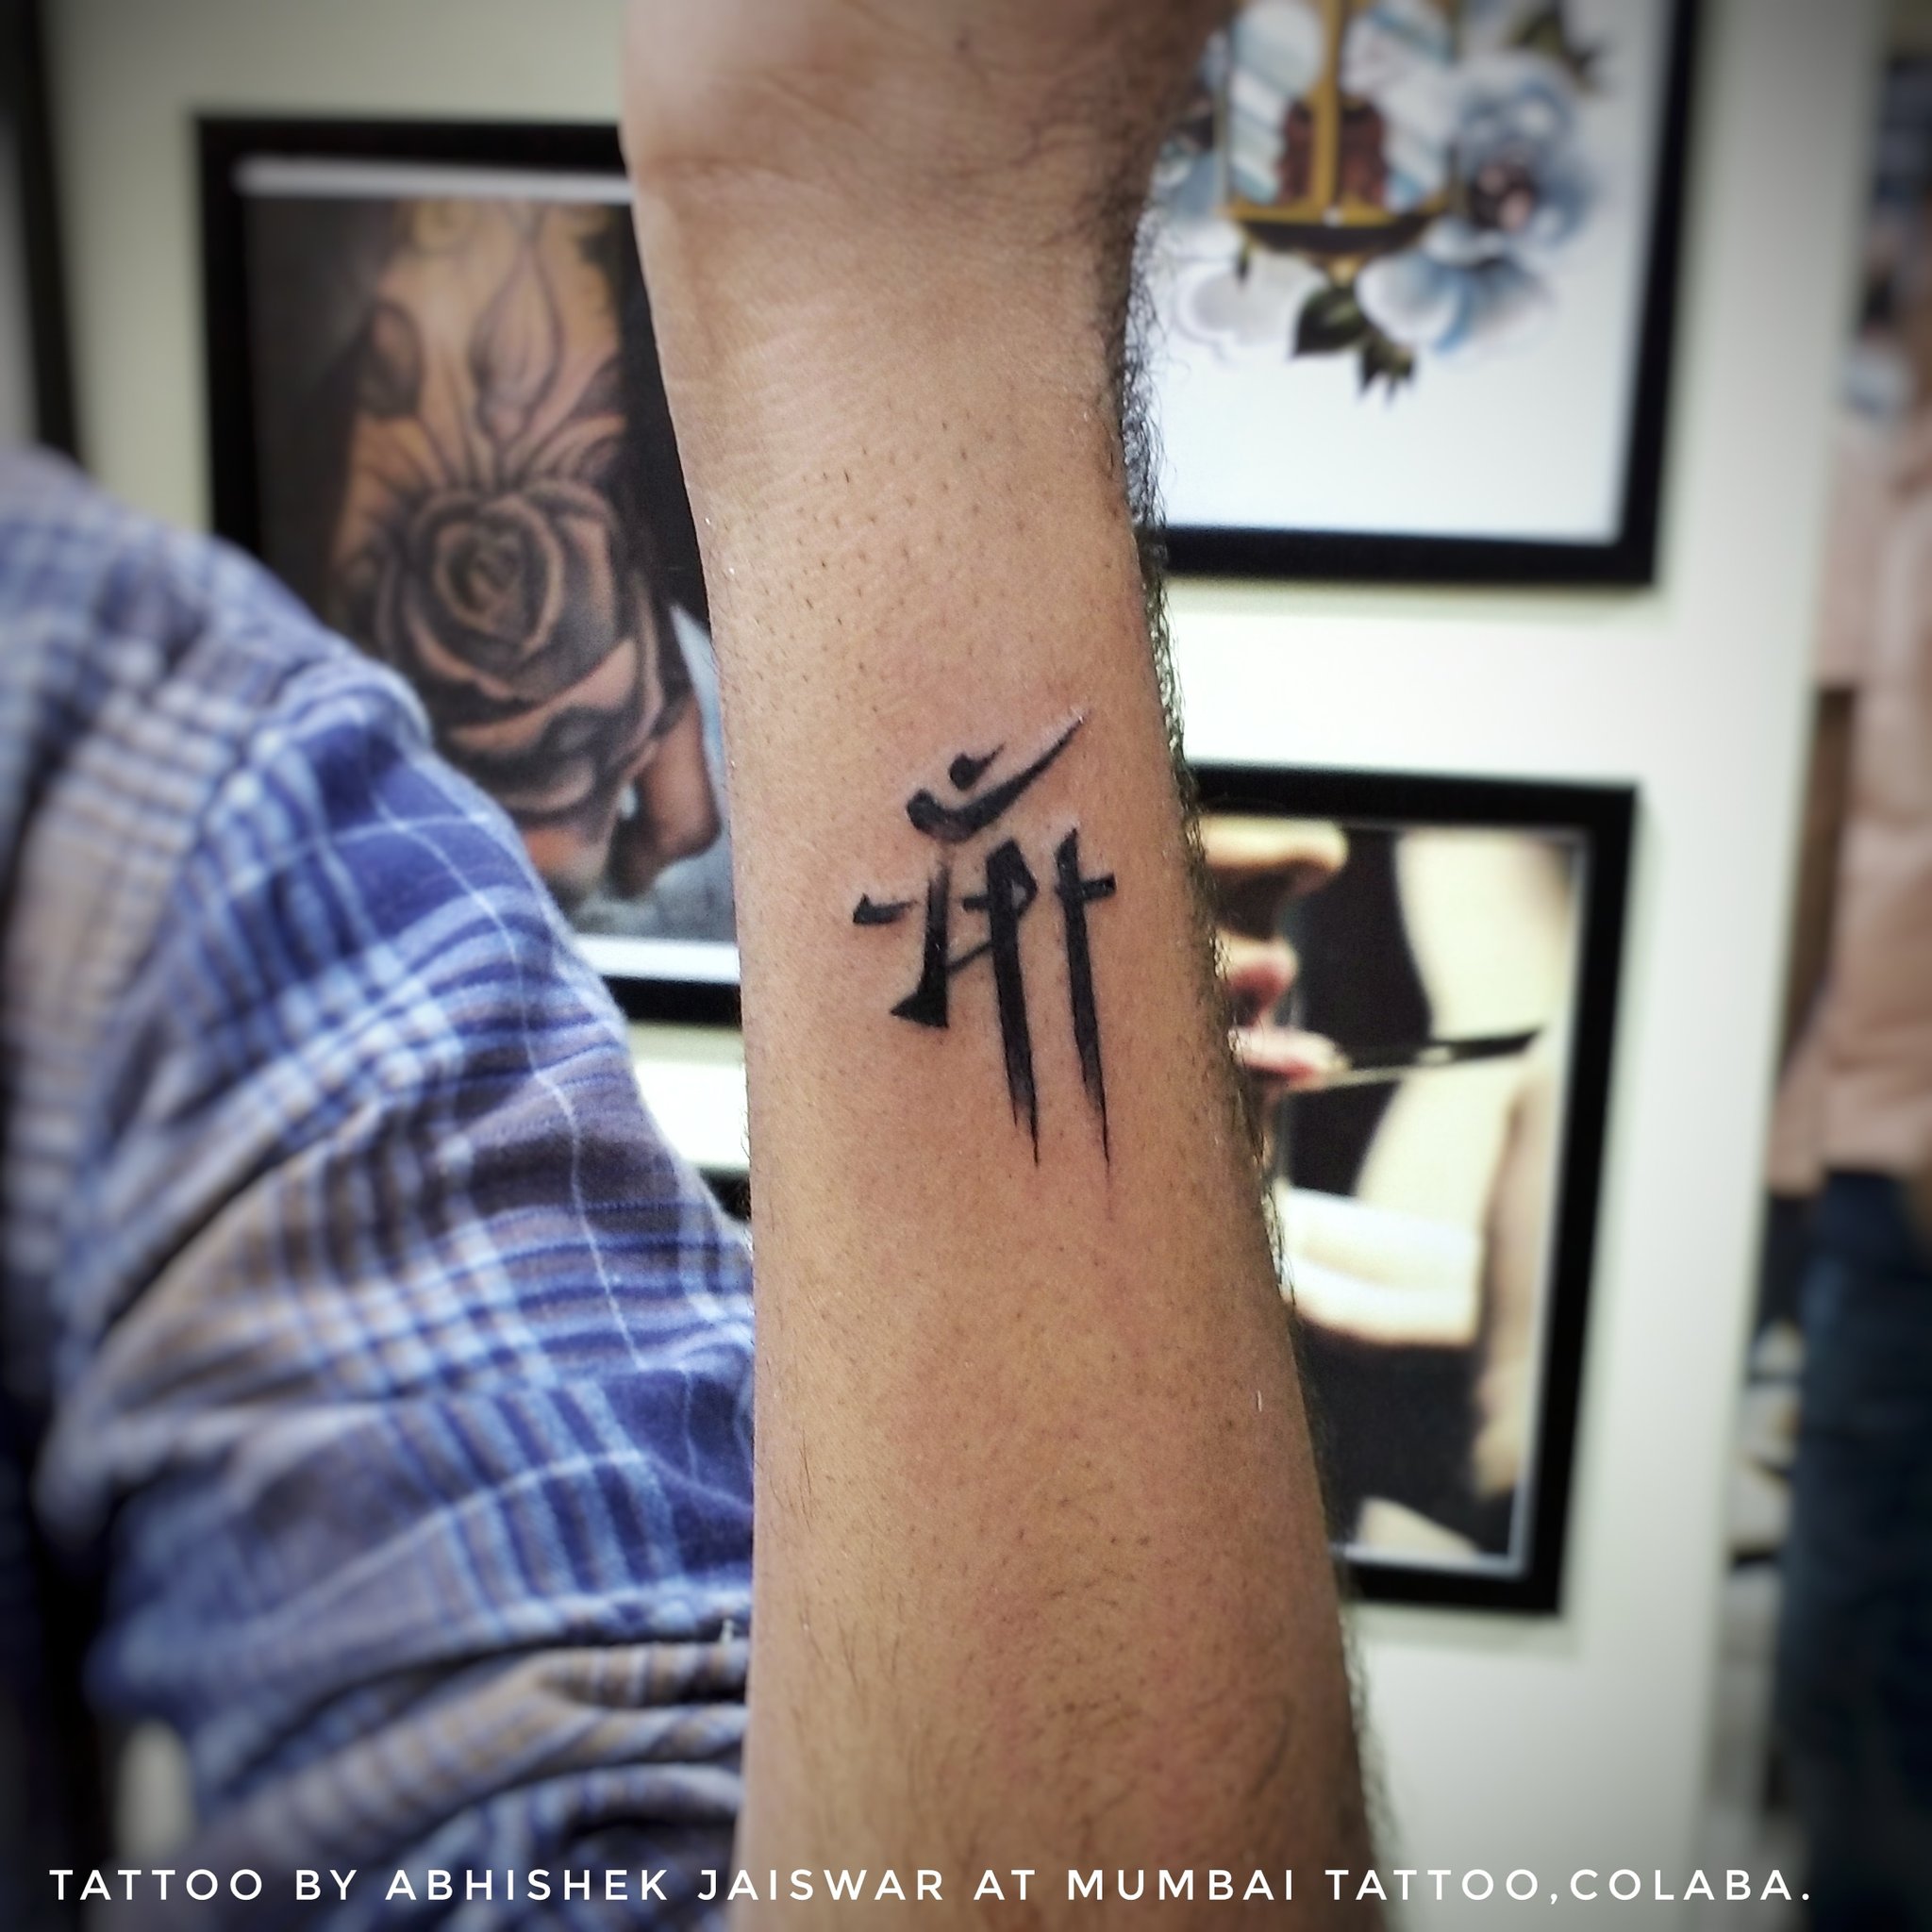 sarvvyapi bahut te# tu tatoo#7024610629#Maa tattoo studio#raipur | Instagram